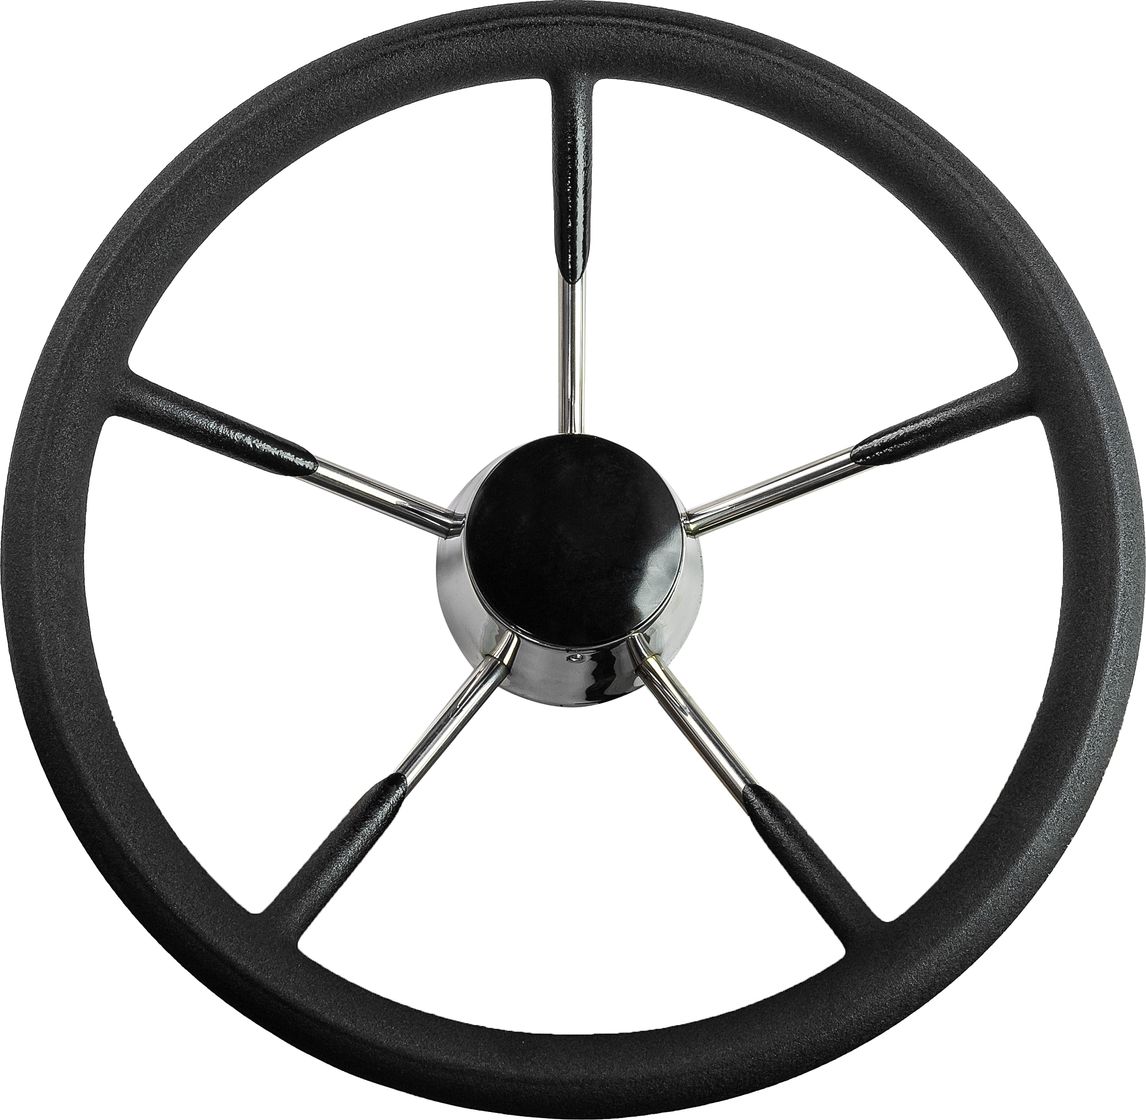 Рулевое колесо черный обод, стальные спицы, диаметр 340 мм 73053-01 колесо 29 переднее dream bike обод двойной алюминиевый 32 спицы под диск